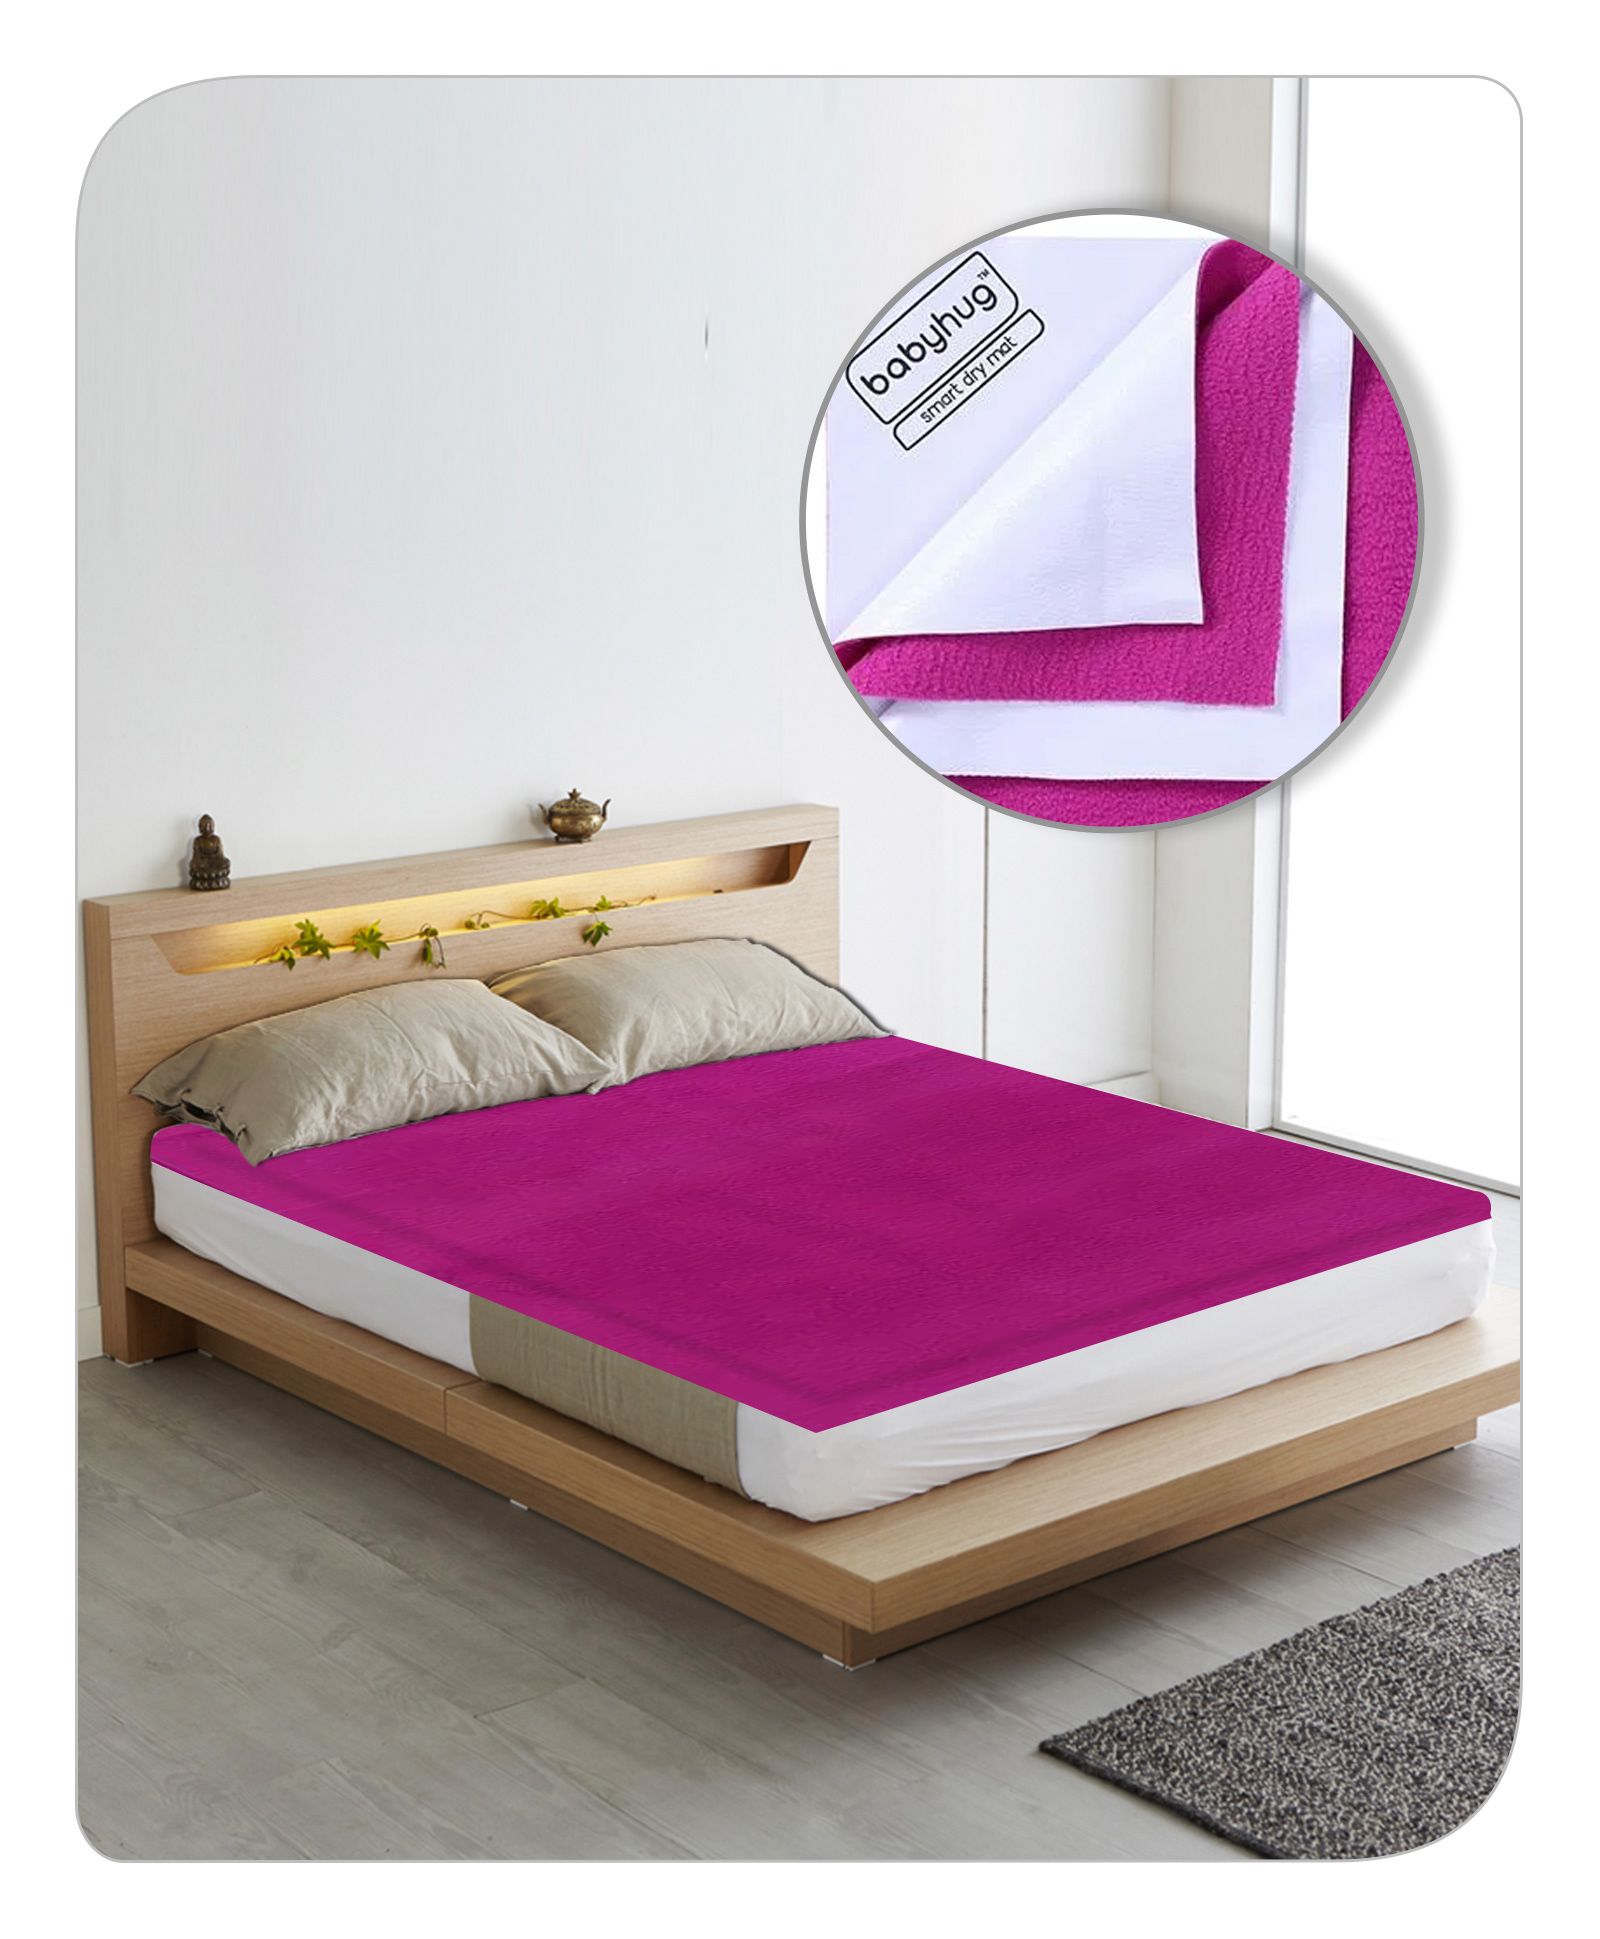 Middeleeuws Disciplinair onvoorwaardelijk Babyhug Smart Dry Bed Protector Sheet XXL - Orchid Online in India, Buy at  Best Price from FirstCry.com - 1206000